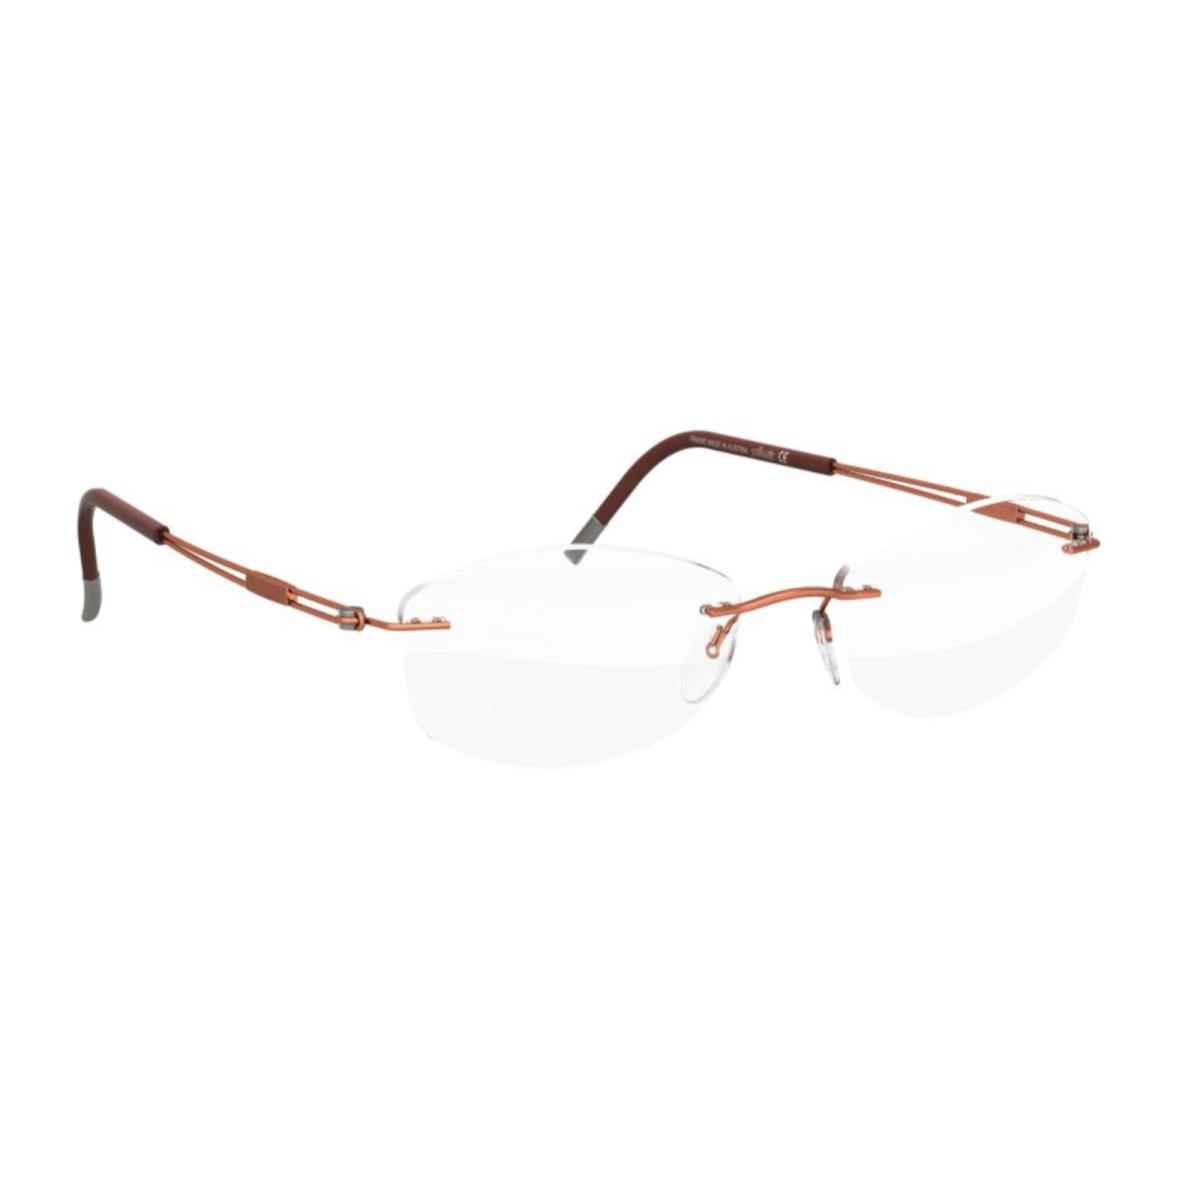 Silhouette Eyeglasses 5521 FD 2540 Titan Next Generation Orange Titanium Frame